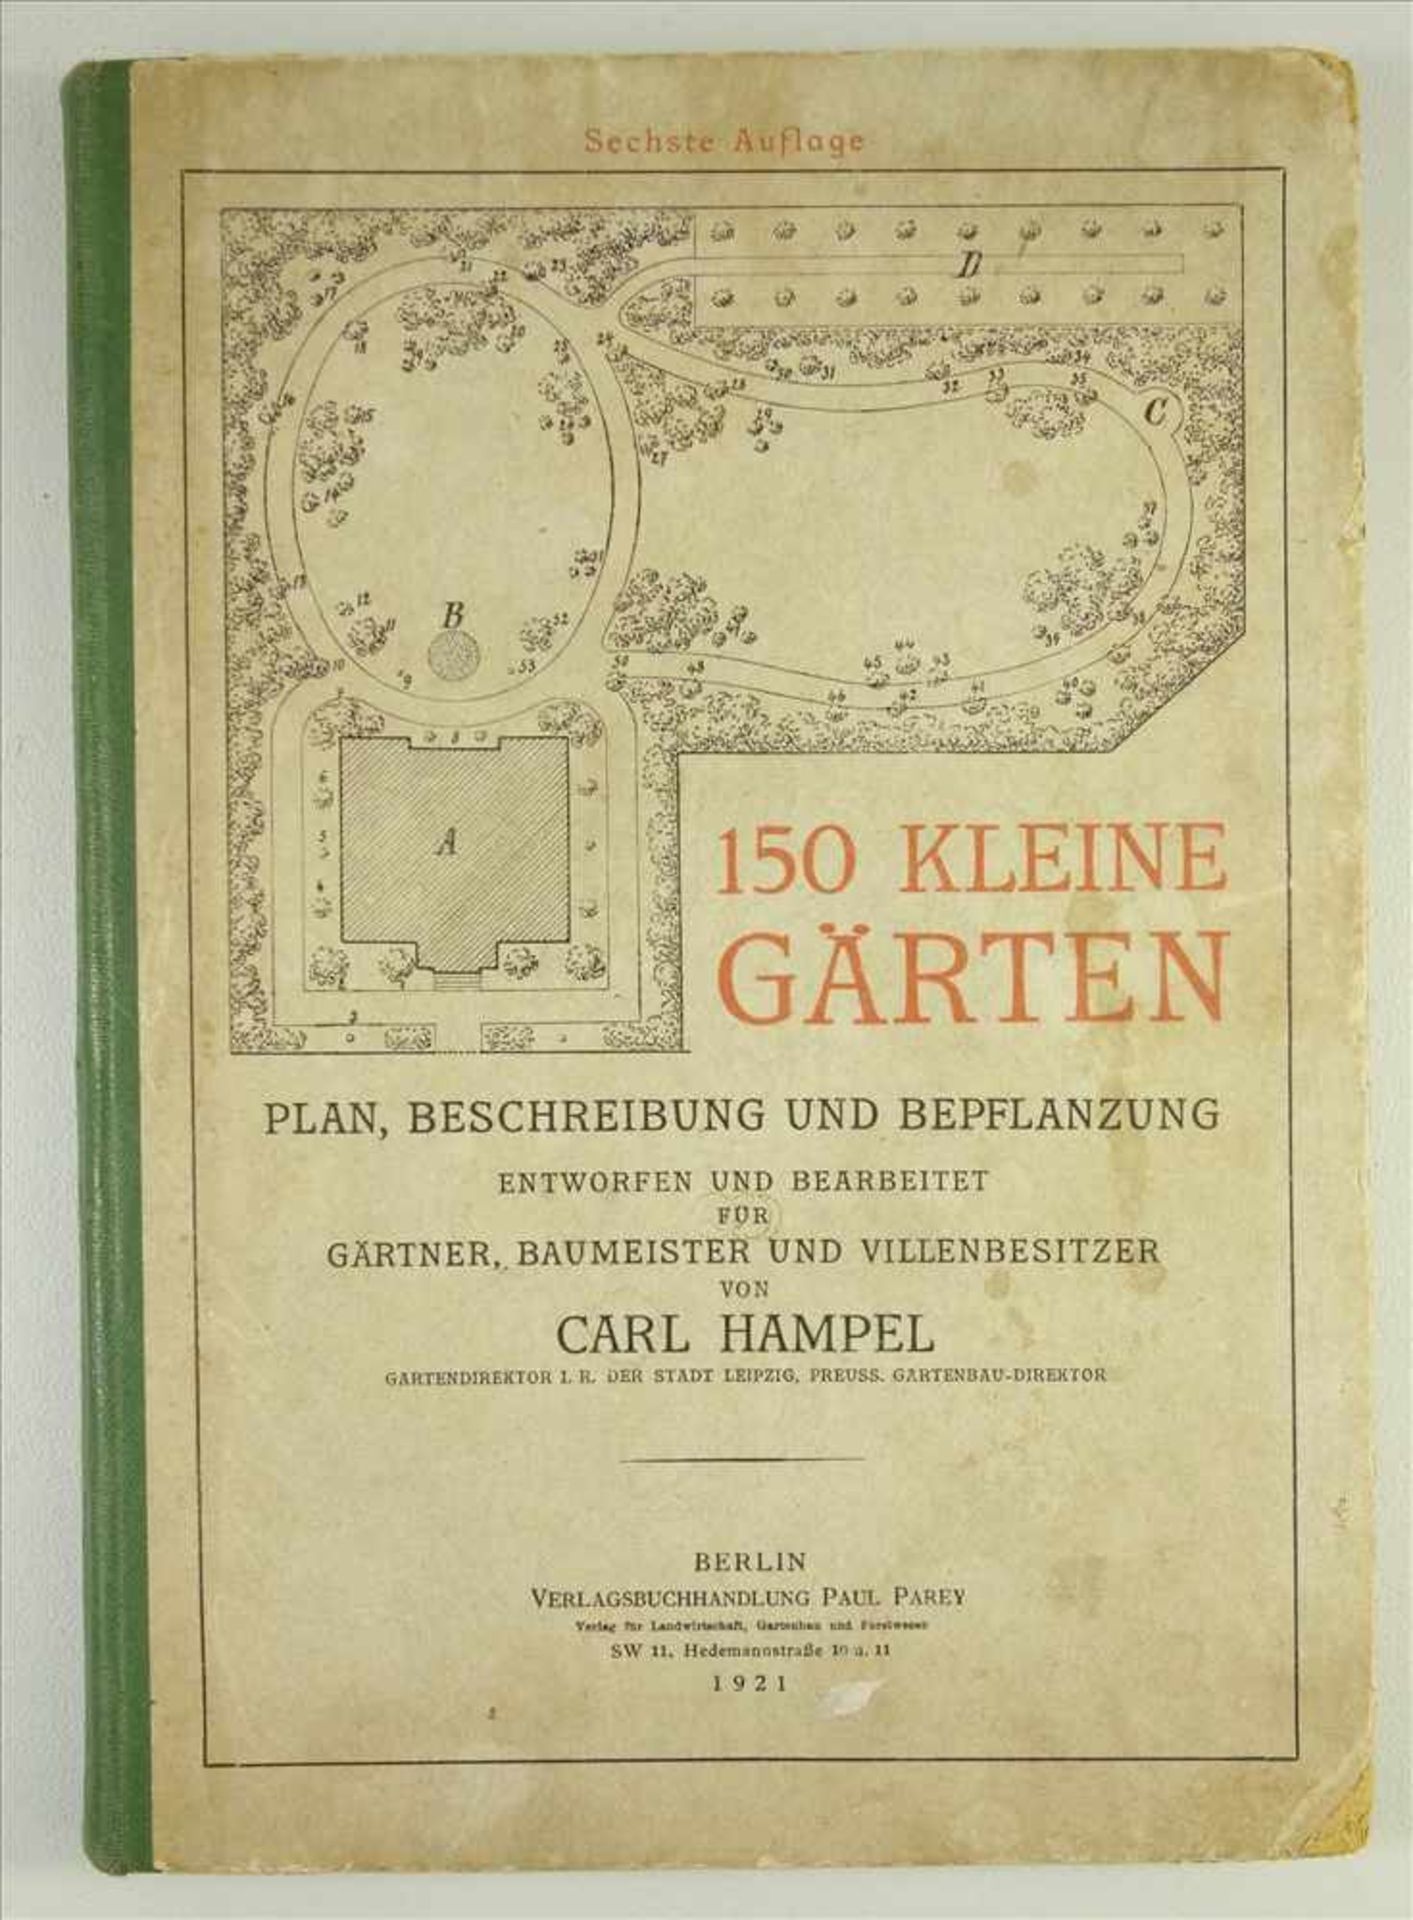 150 kleine Gärten von Carl Hampel, Berlin 1921, Plan, Beschreibung und Bepflanzung, entworfen und